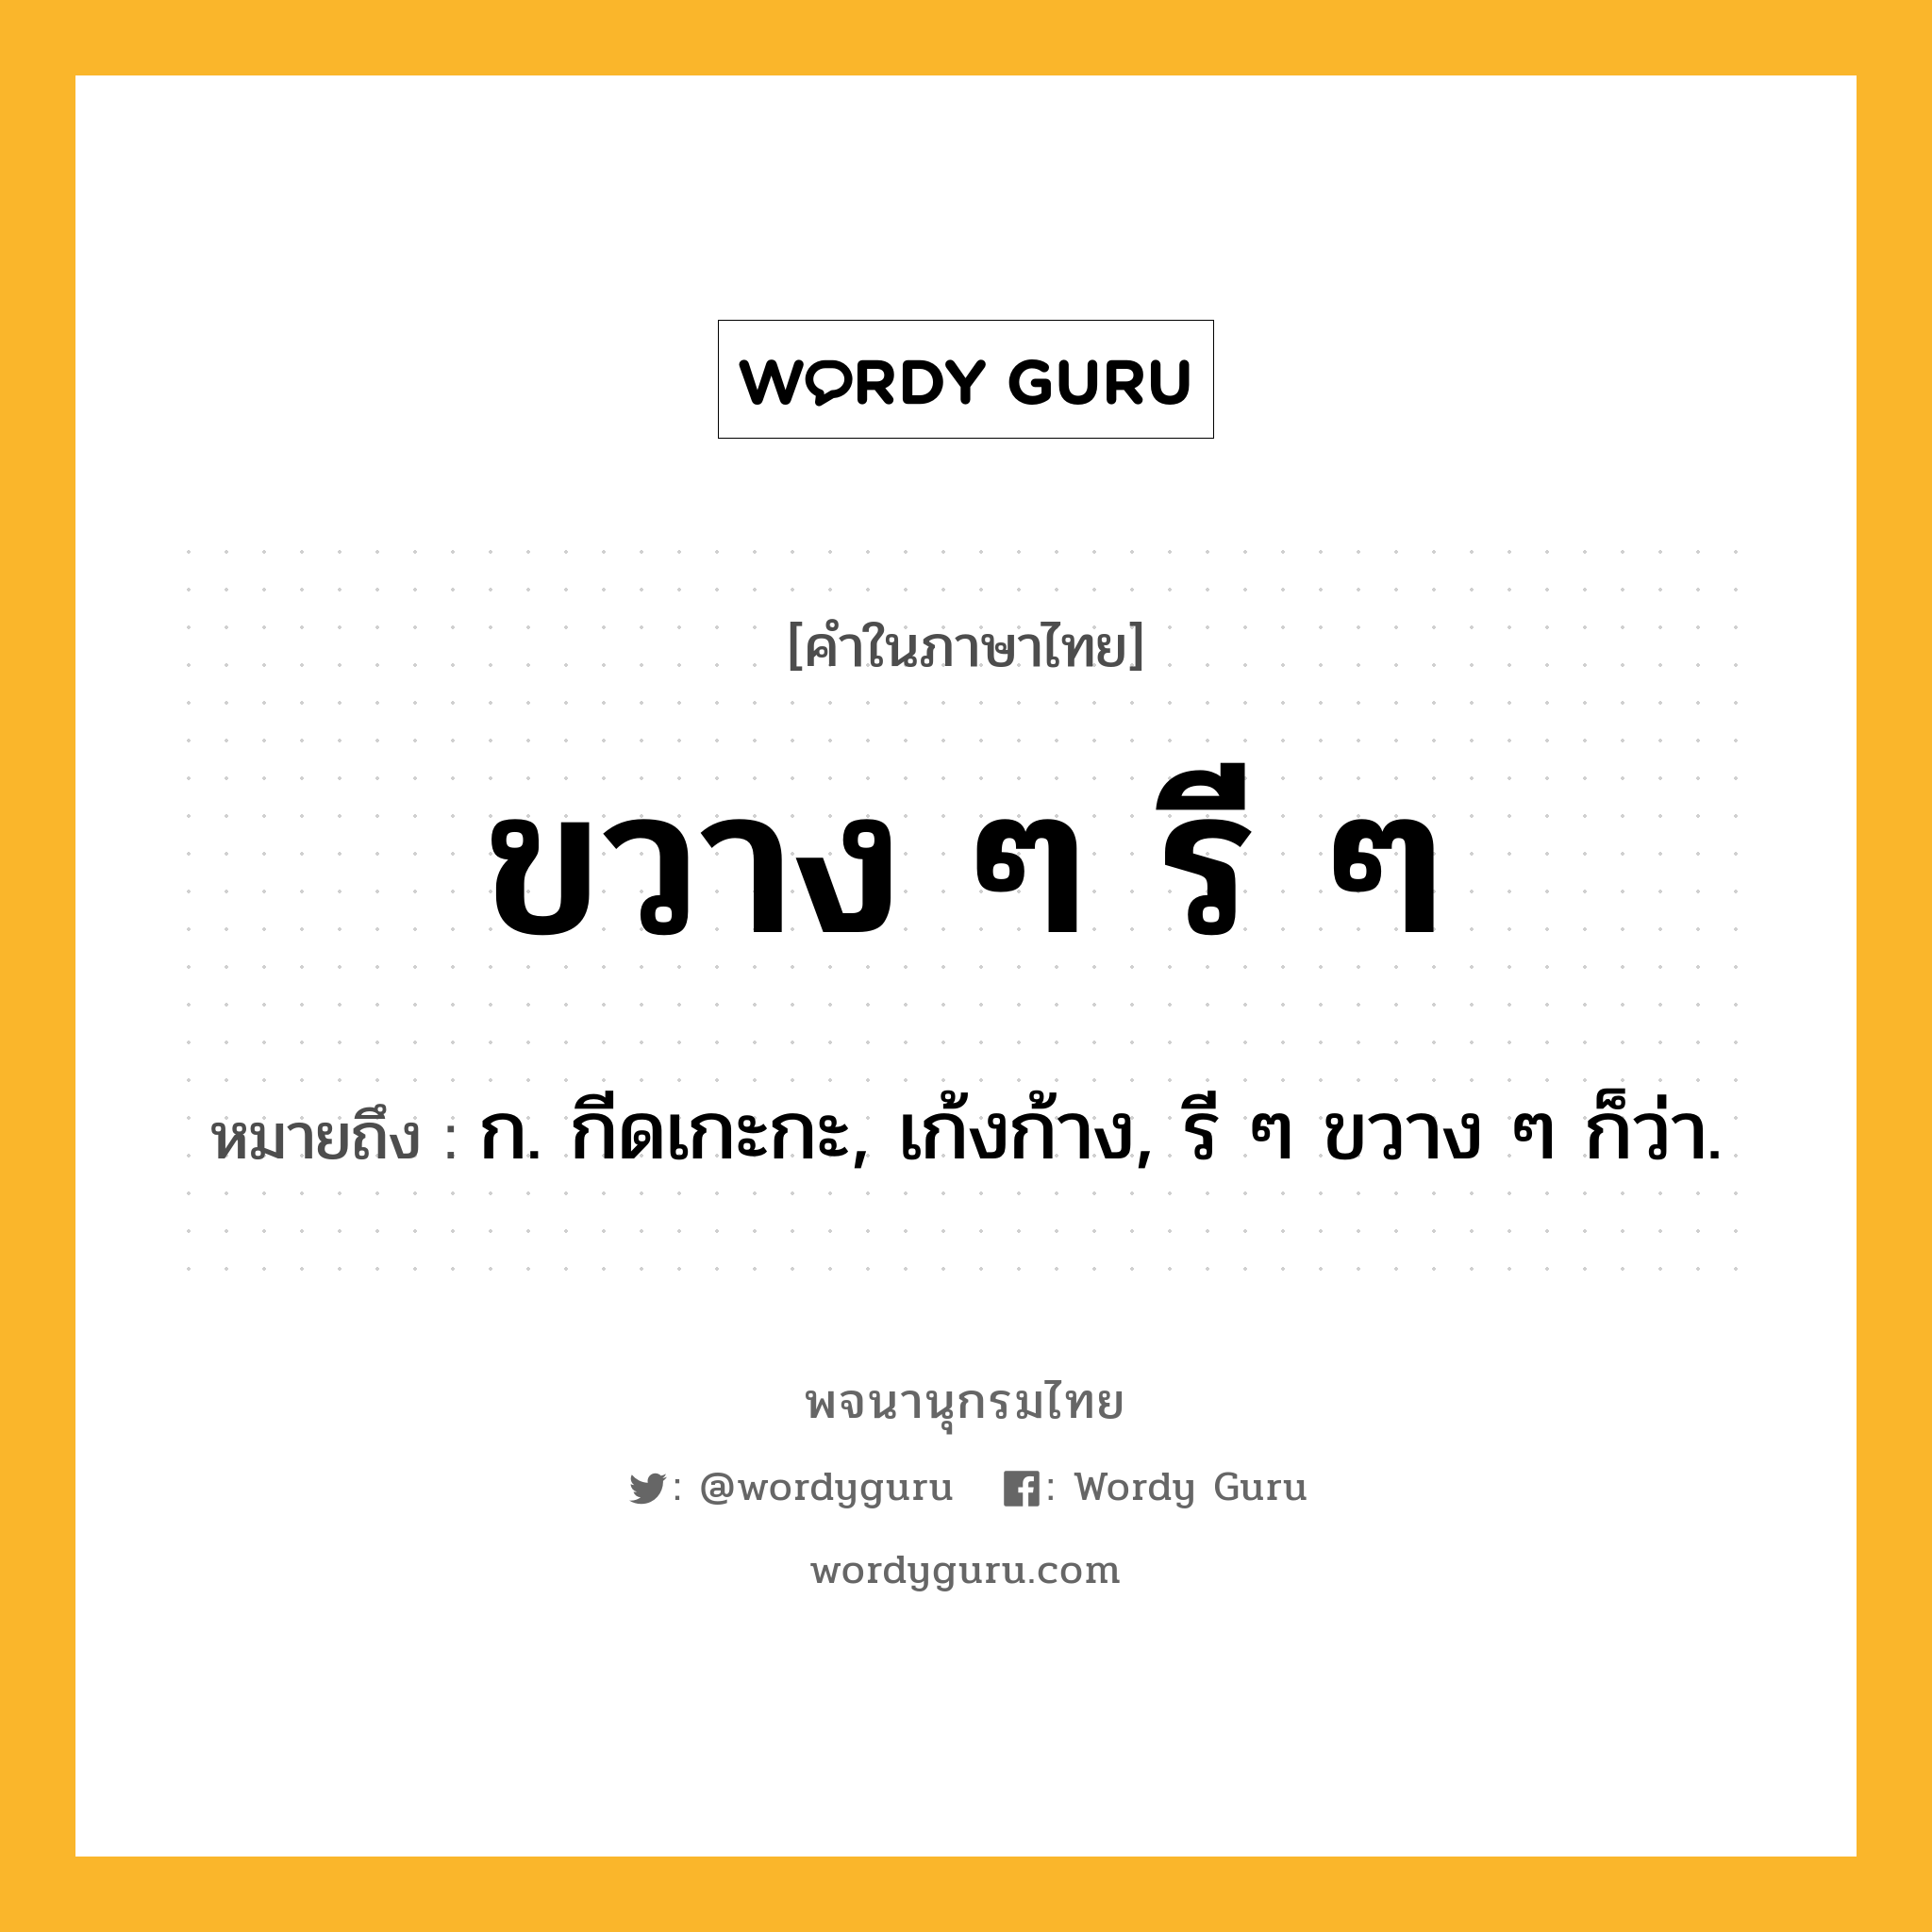 ขวาง ๆ รี ๆ ความหมาย หมายถึงอะไร?, คำในภาษาไทย ขวาง ๆ รี ๆ หมายถึง ก. กีดเกะกะ, เก้งก้าง, รี ๆ ขวาง ๆ ก็ว่า.